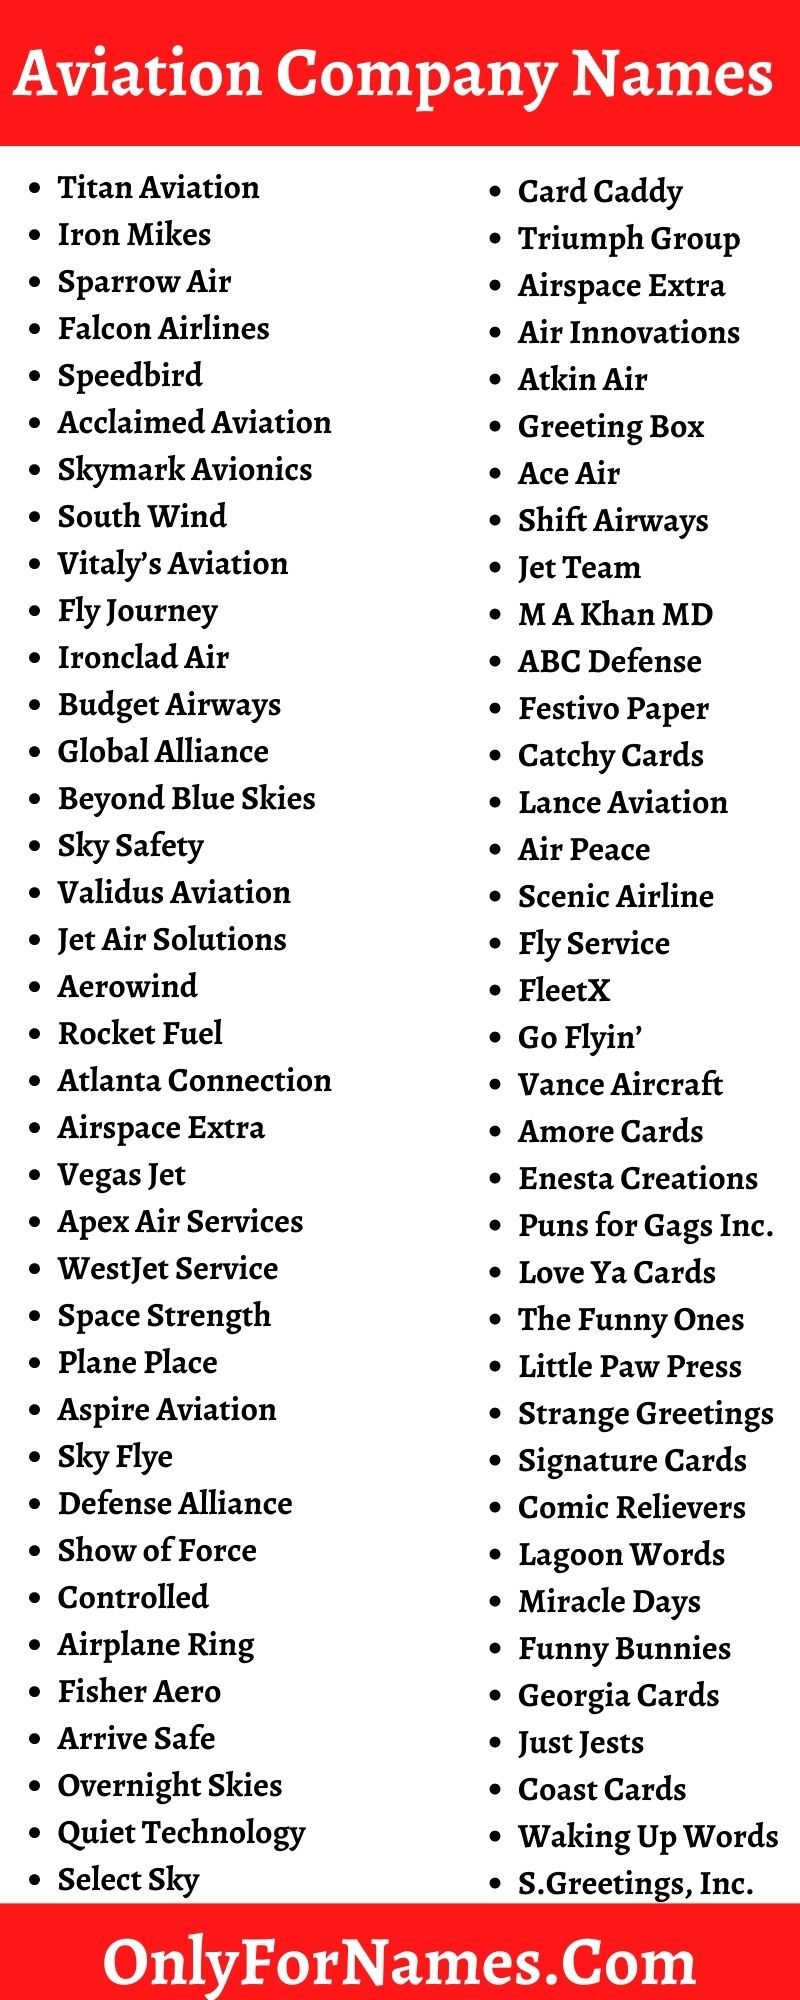 Aviation Company Names